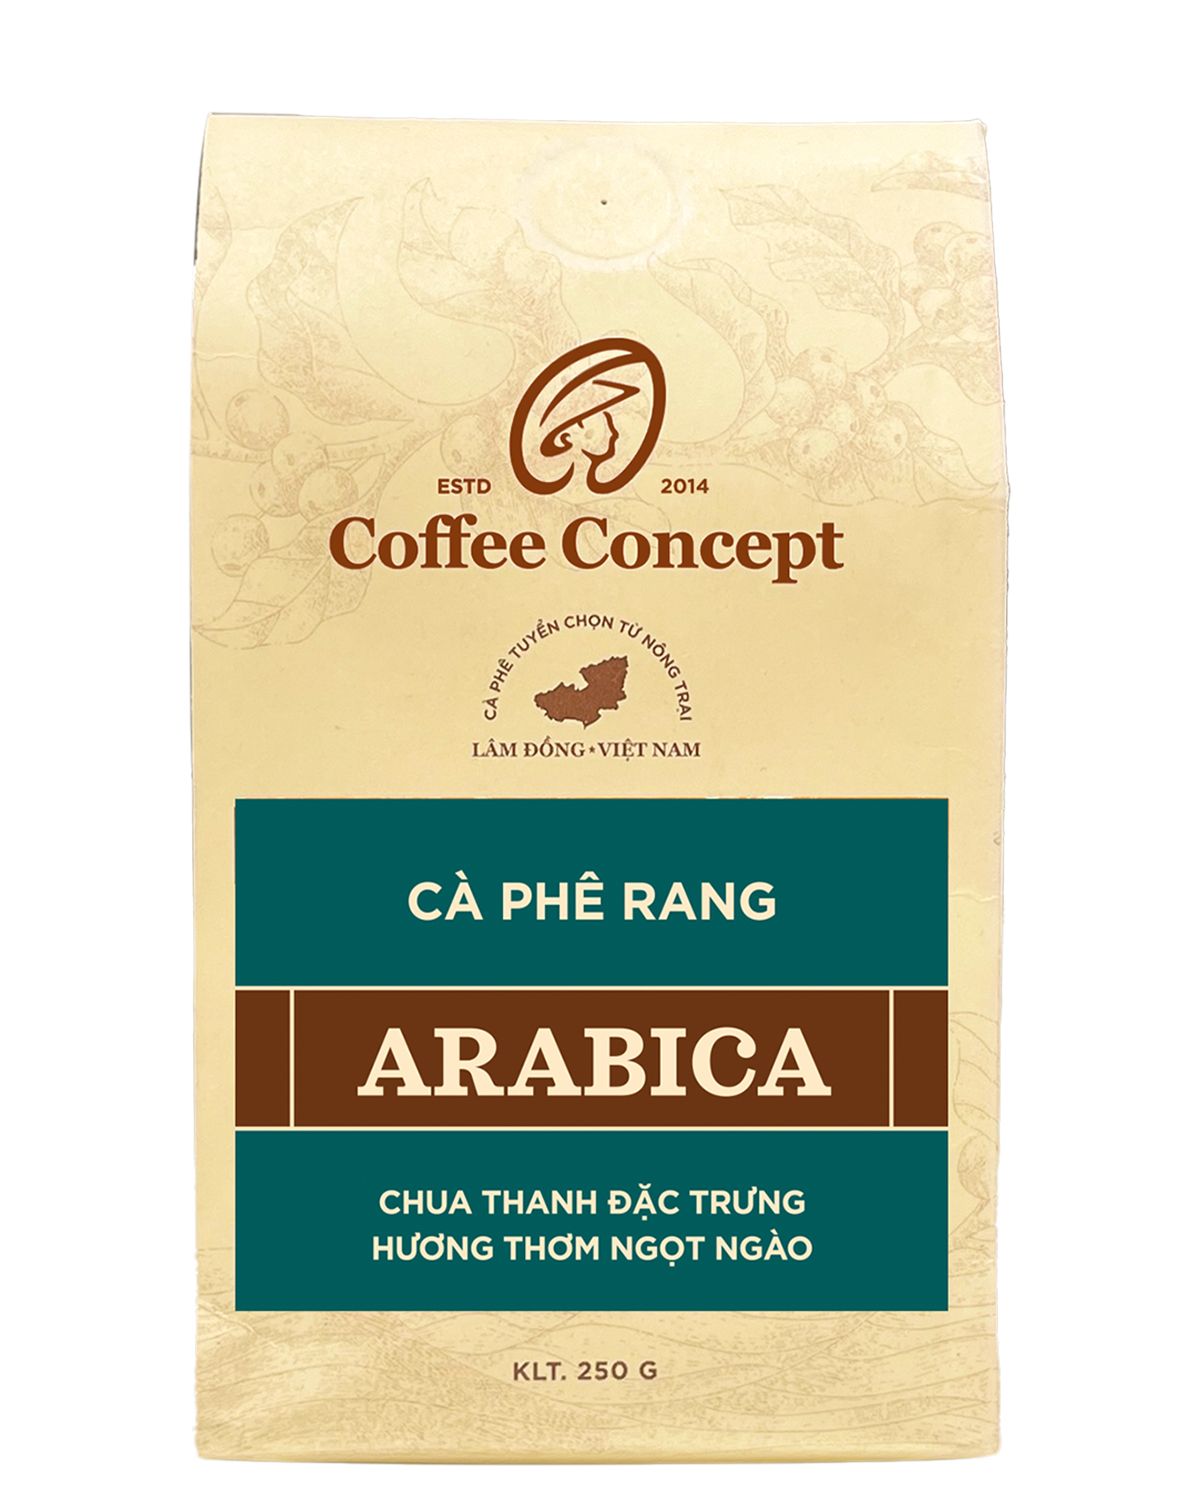  Cà phê rang ARABICA - Gói 250G/500G 